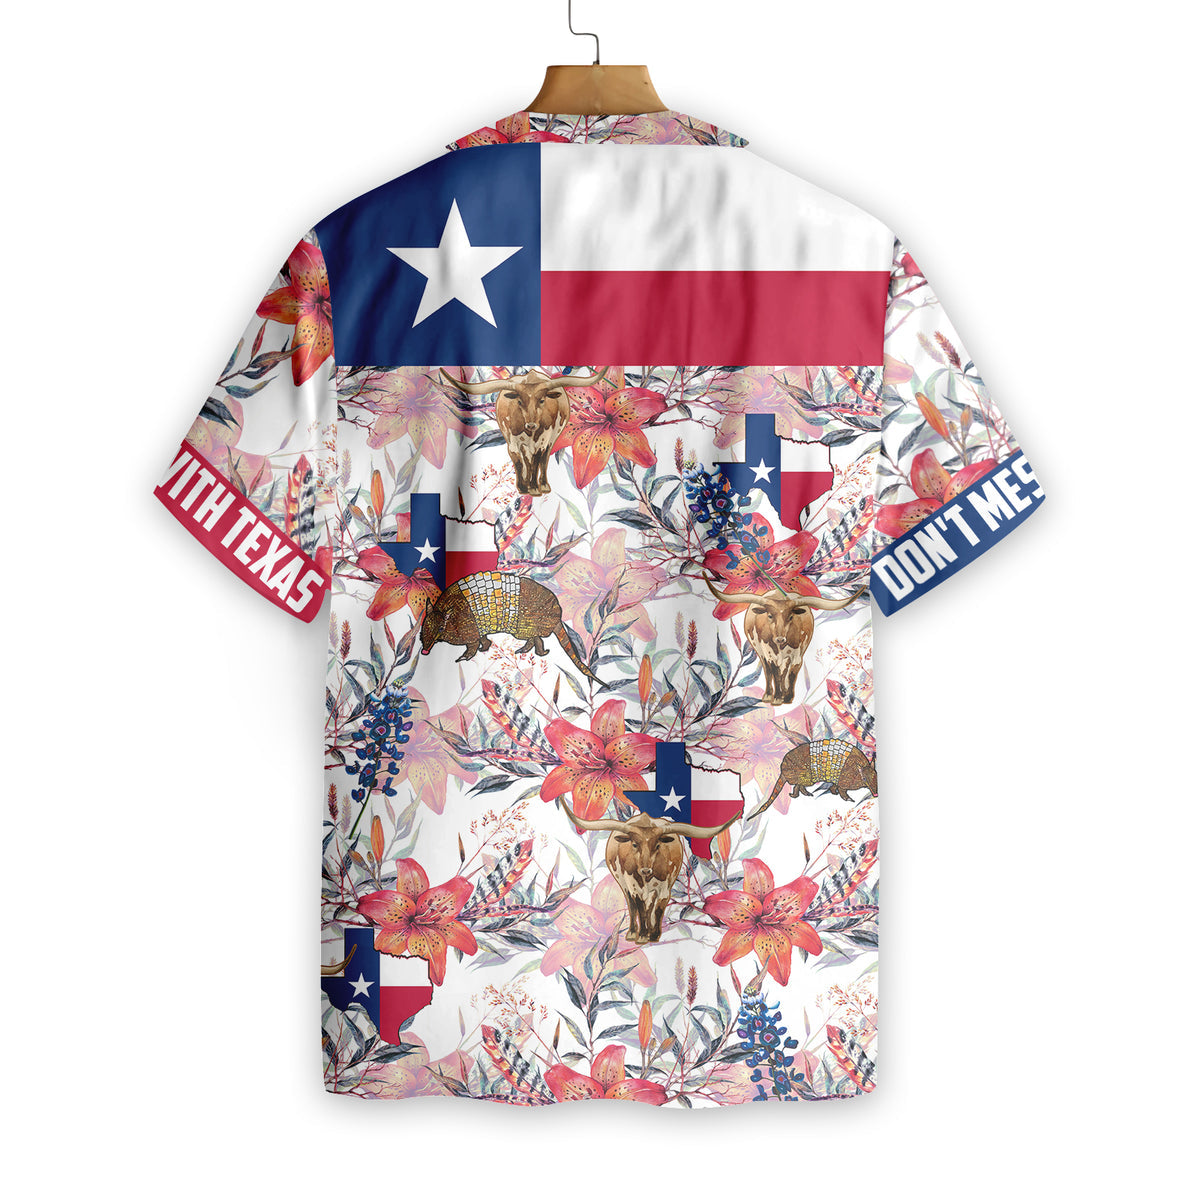 Texas Hawaiian Shirt Bluebonnet Longhorn/ Hawaiian shirts for men/ Women